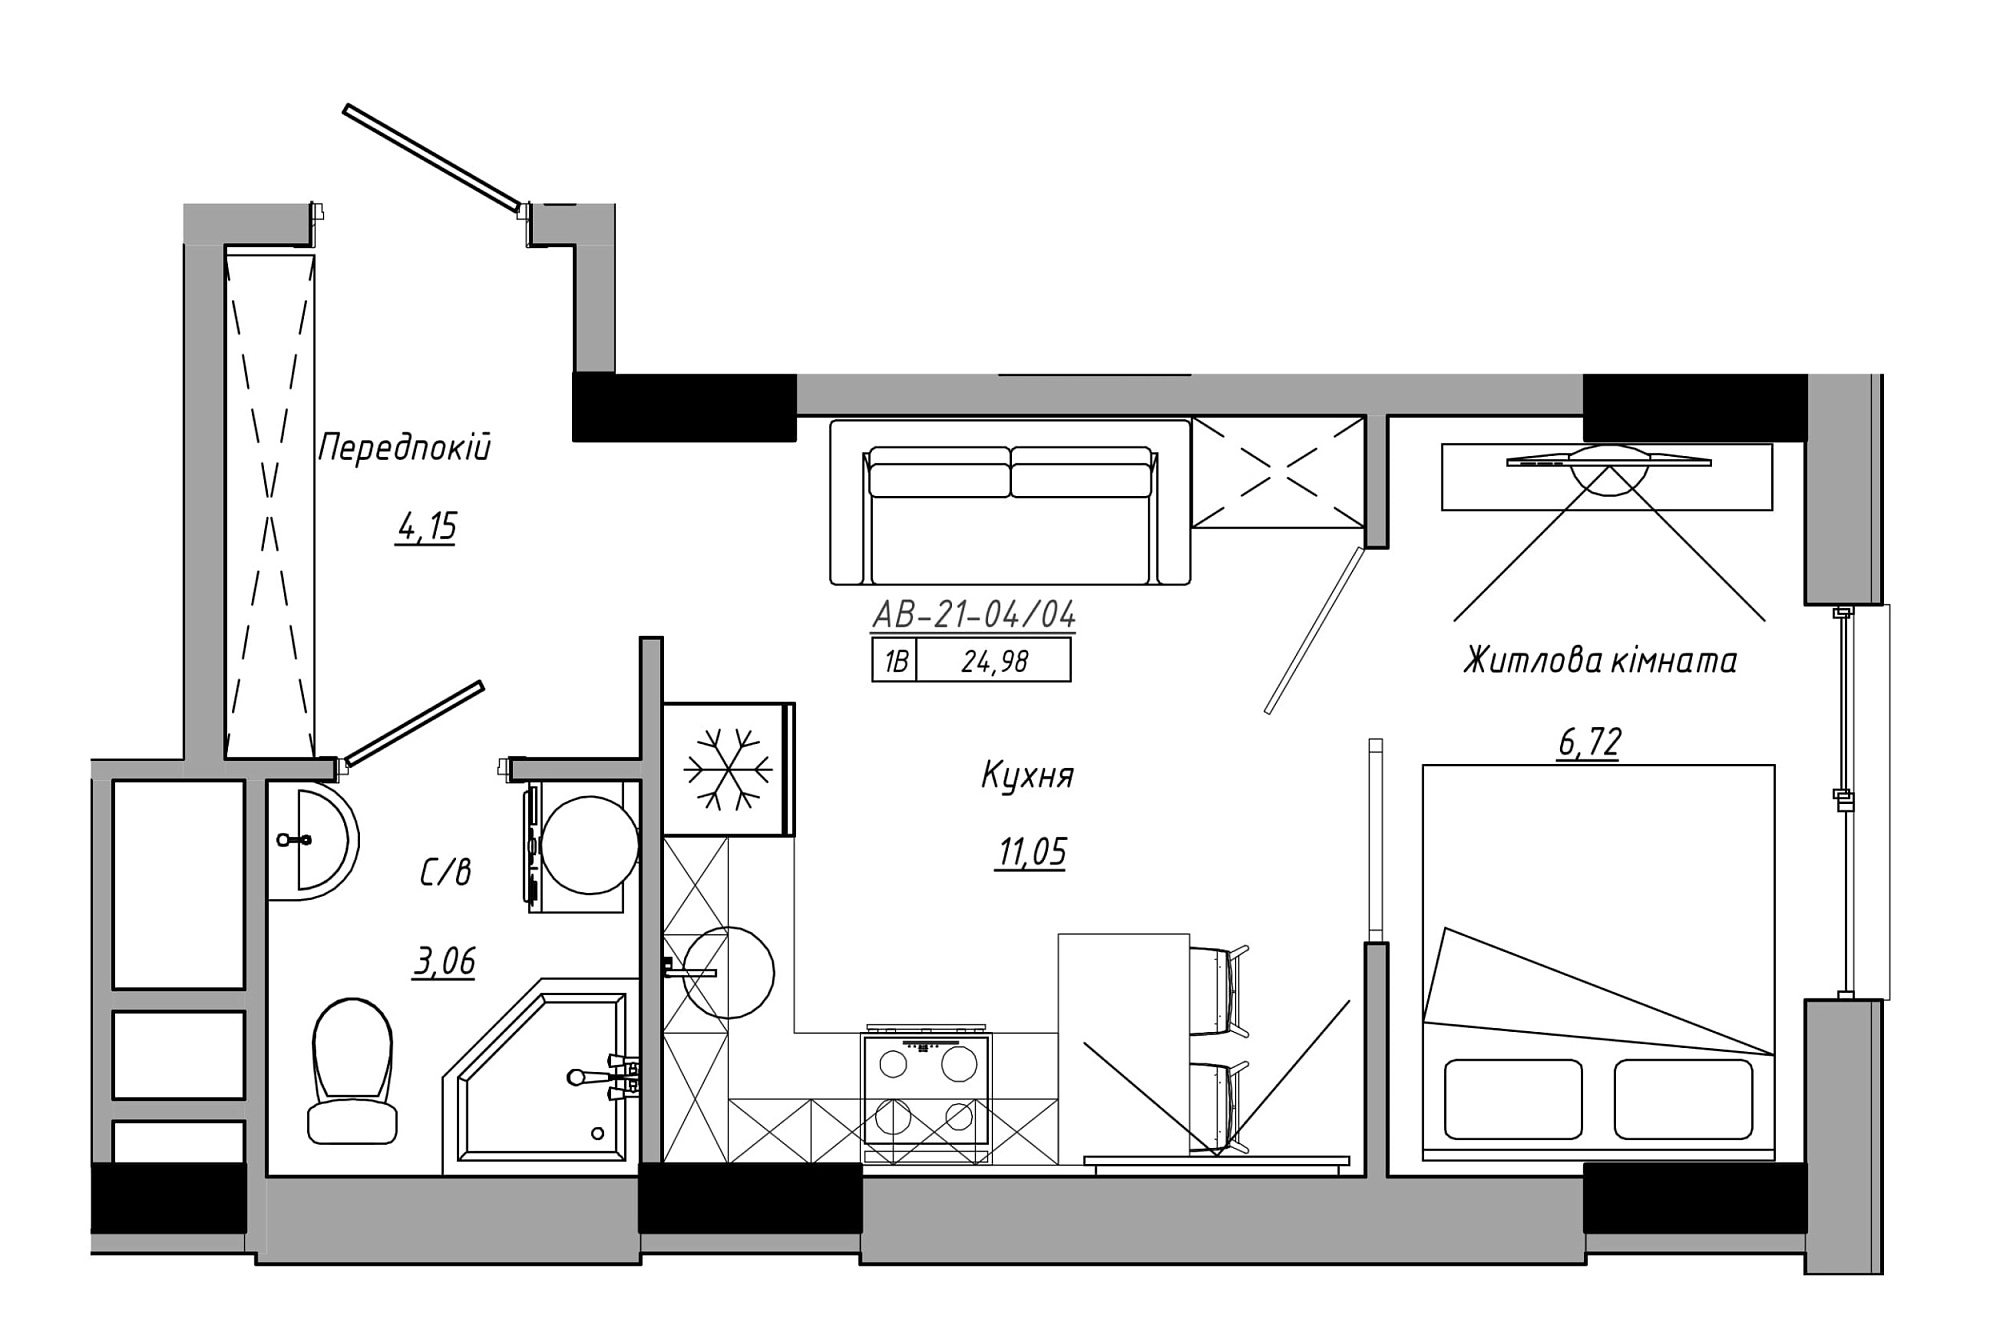 Планування 1-к квартира площею 24.98м2, AB-21-04/00004.